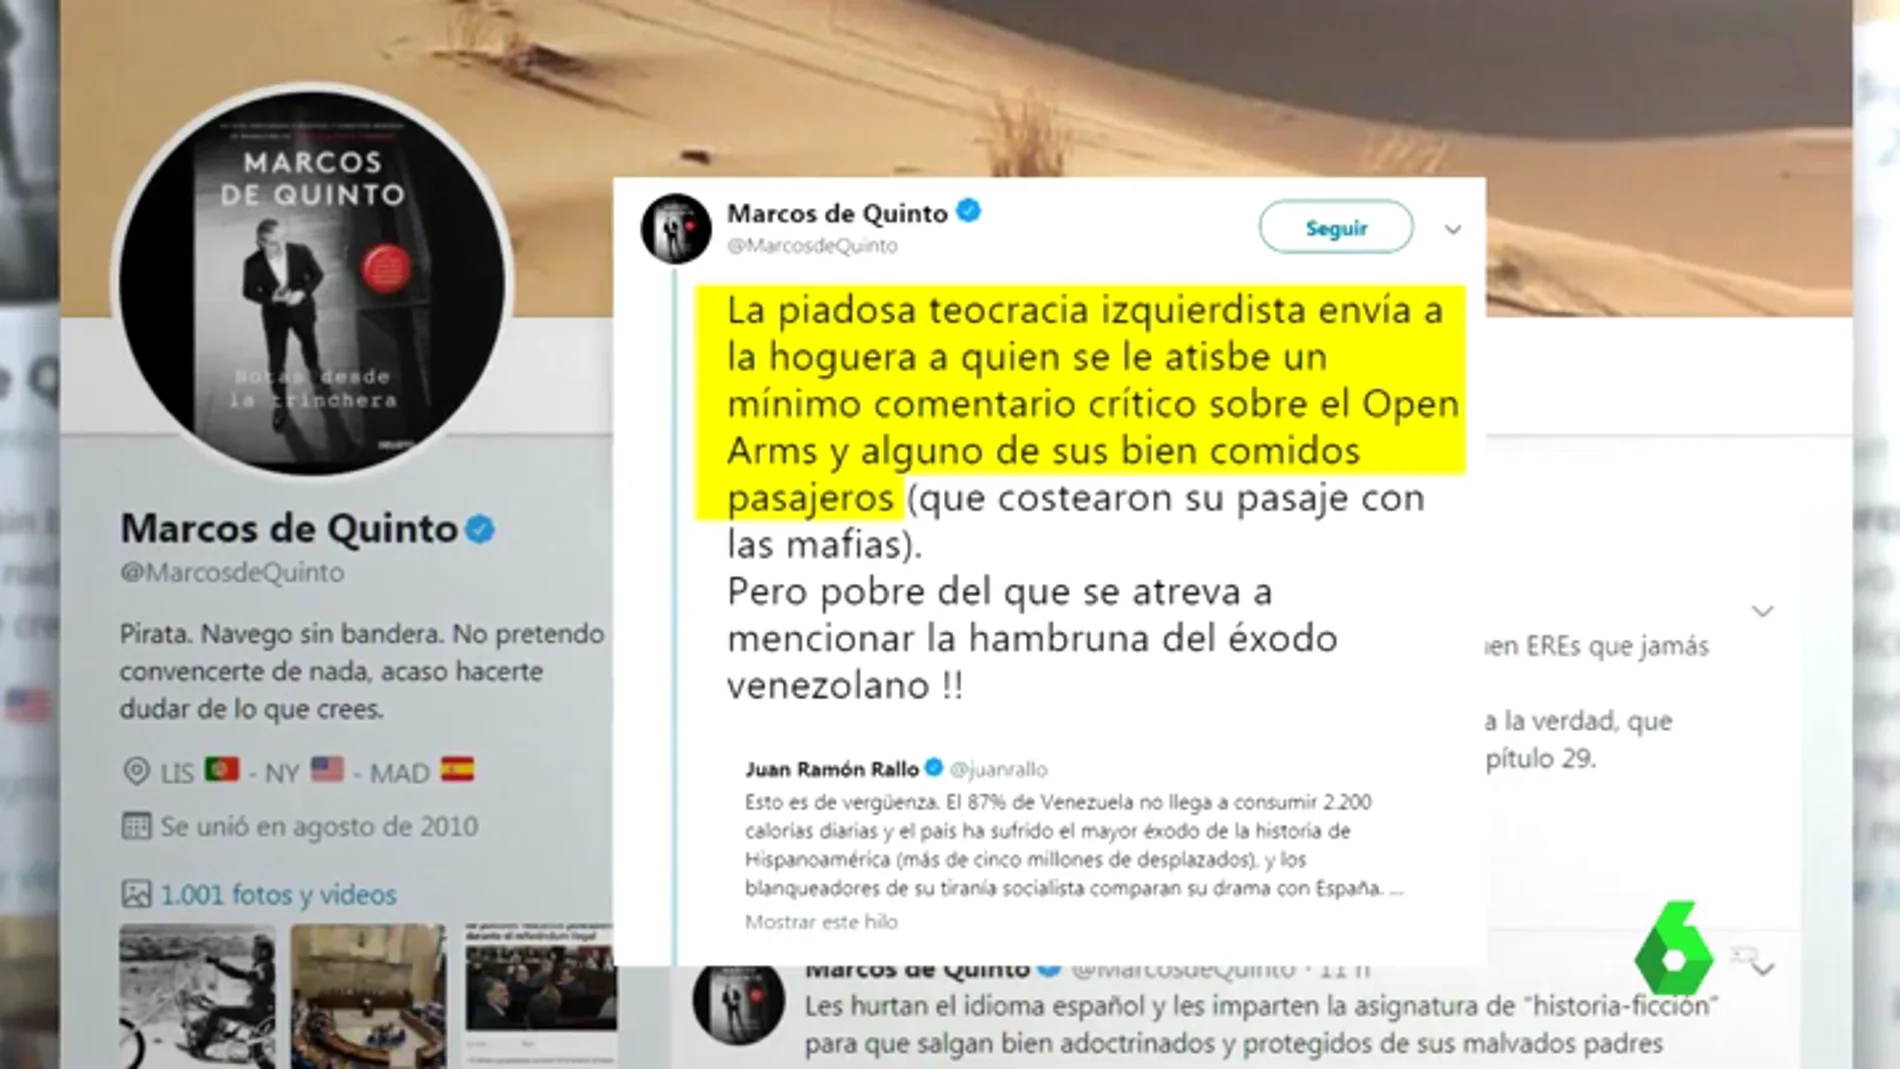  Polémico tuit de Marcos de Quinto (Cs) sobre el Open Arms: habla de "algunos bien comidos pasajeros"